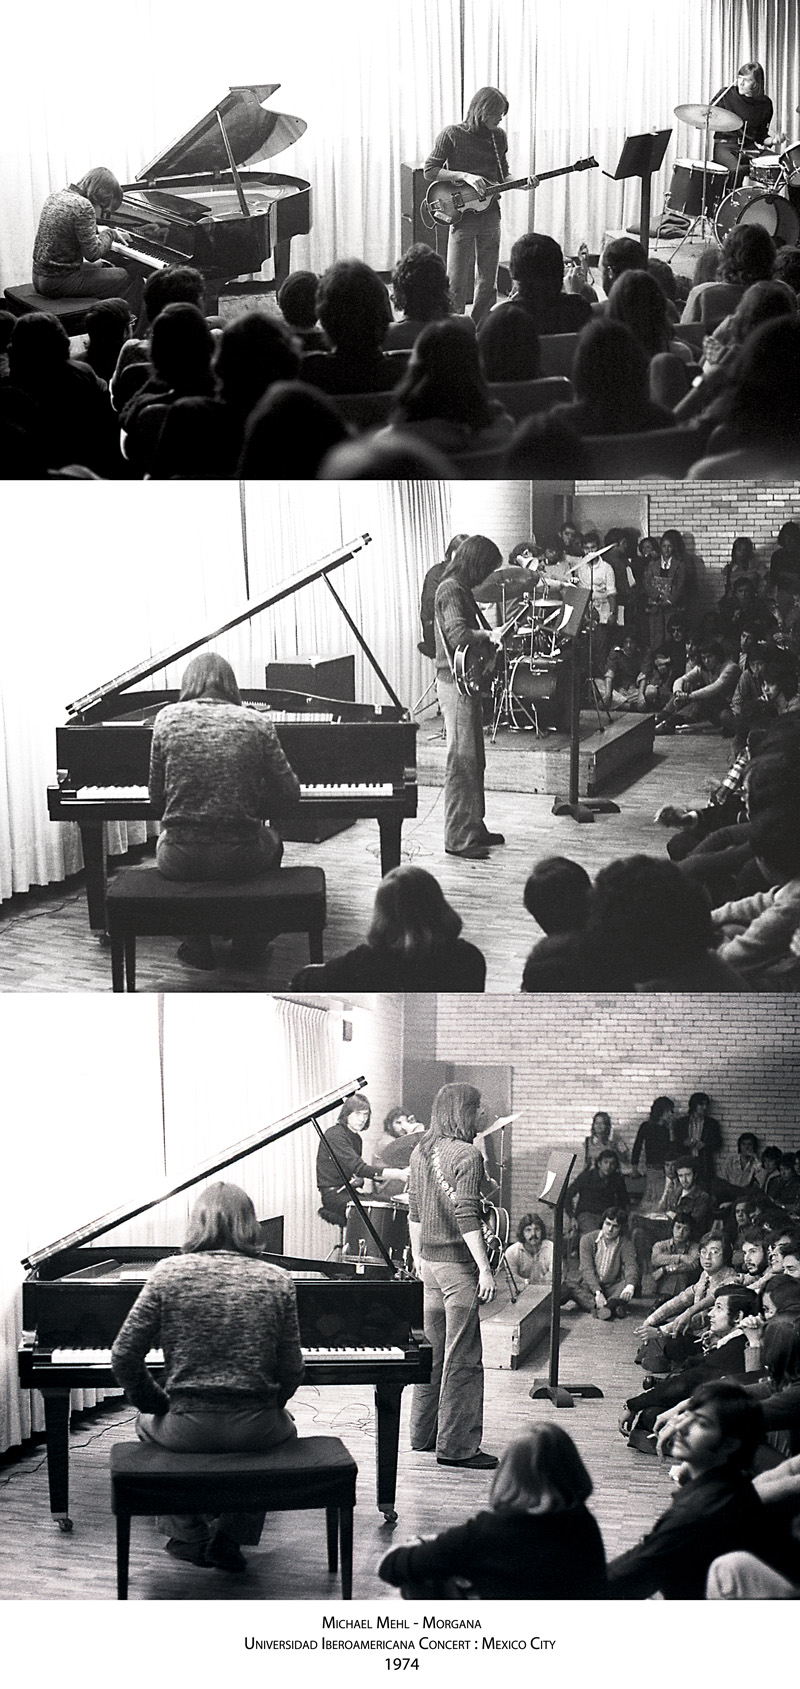 1974_Michael-Mehl_Morgana_Universidad-Iberoamericana-Concert_Mexico-City